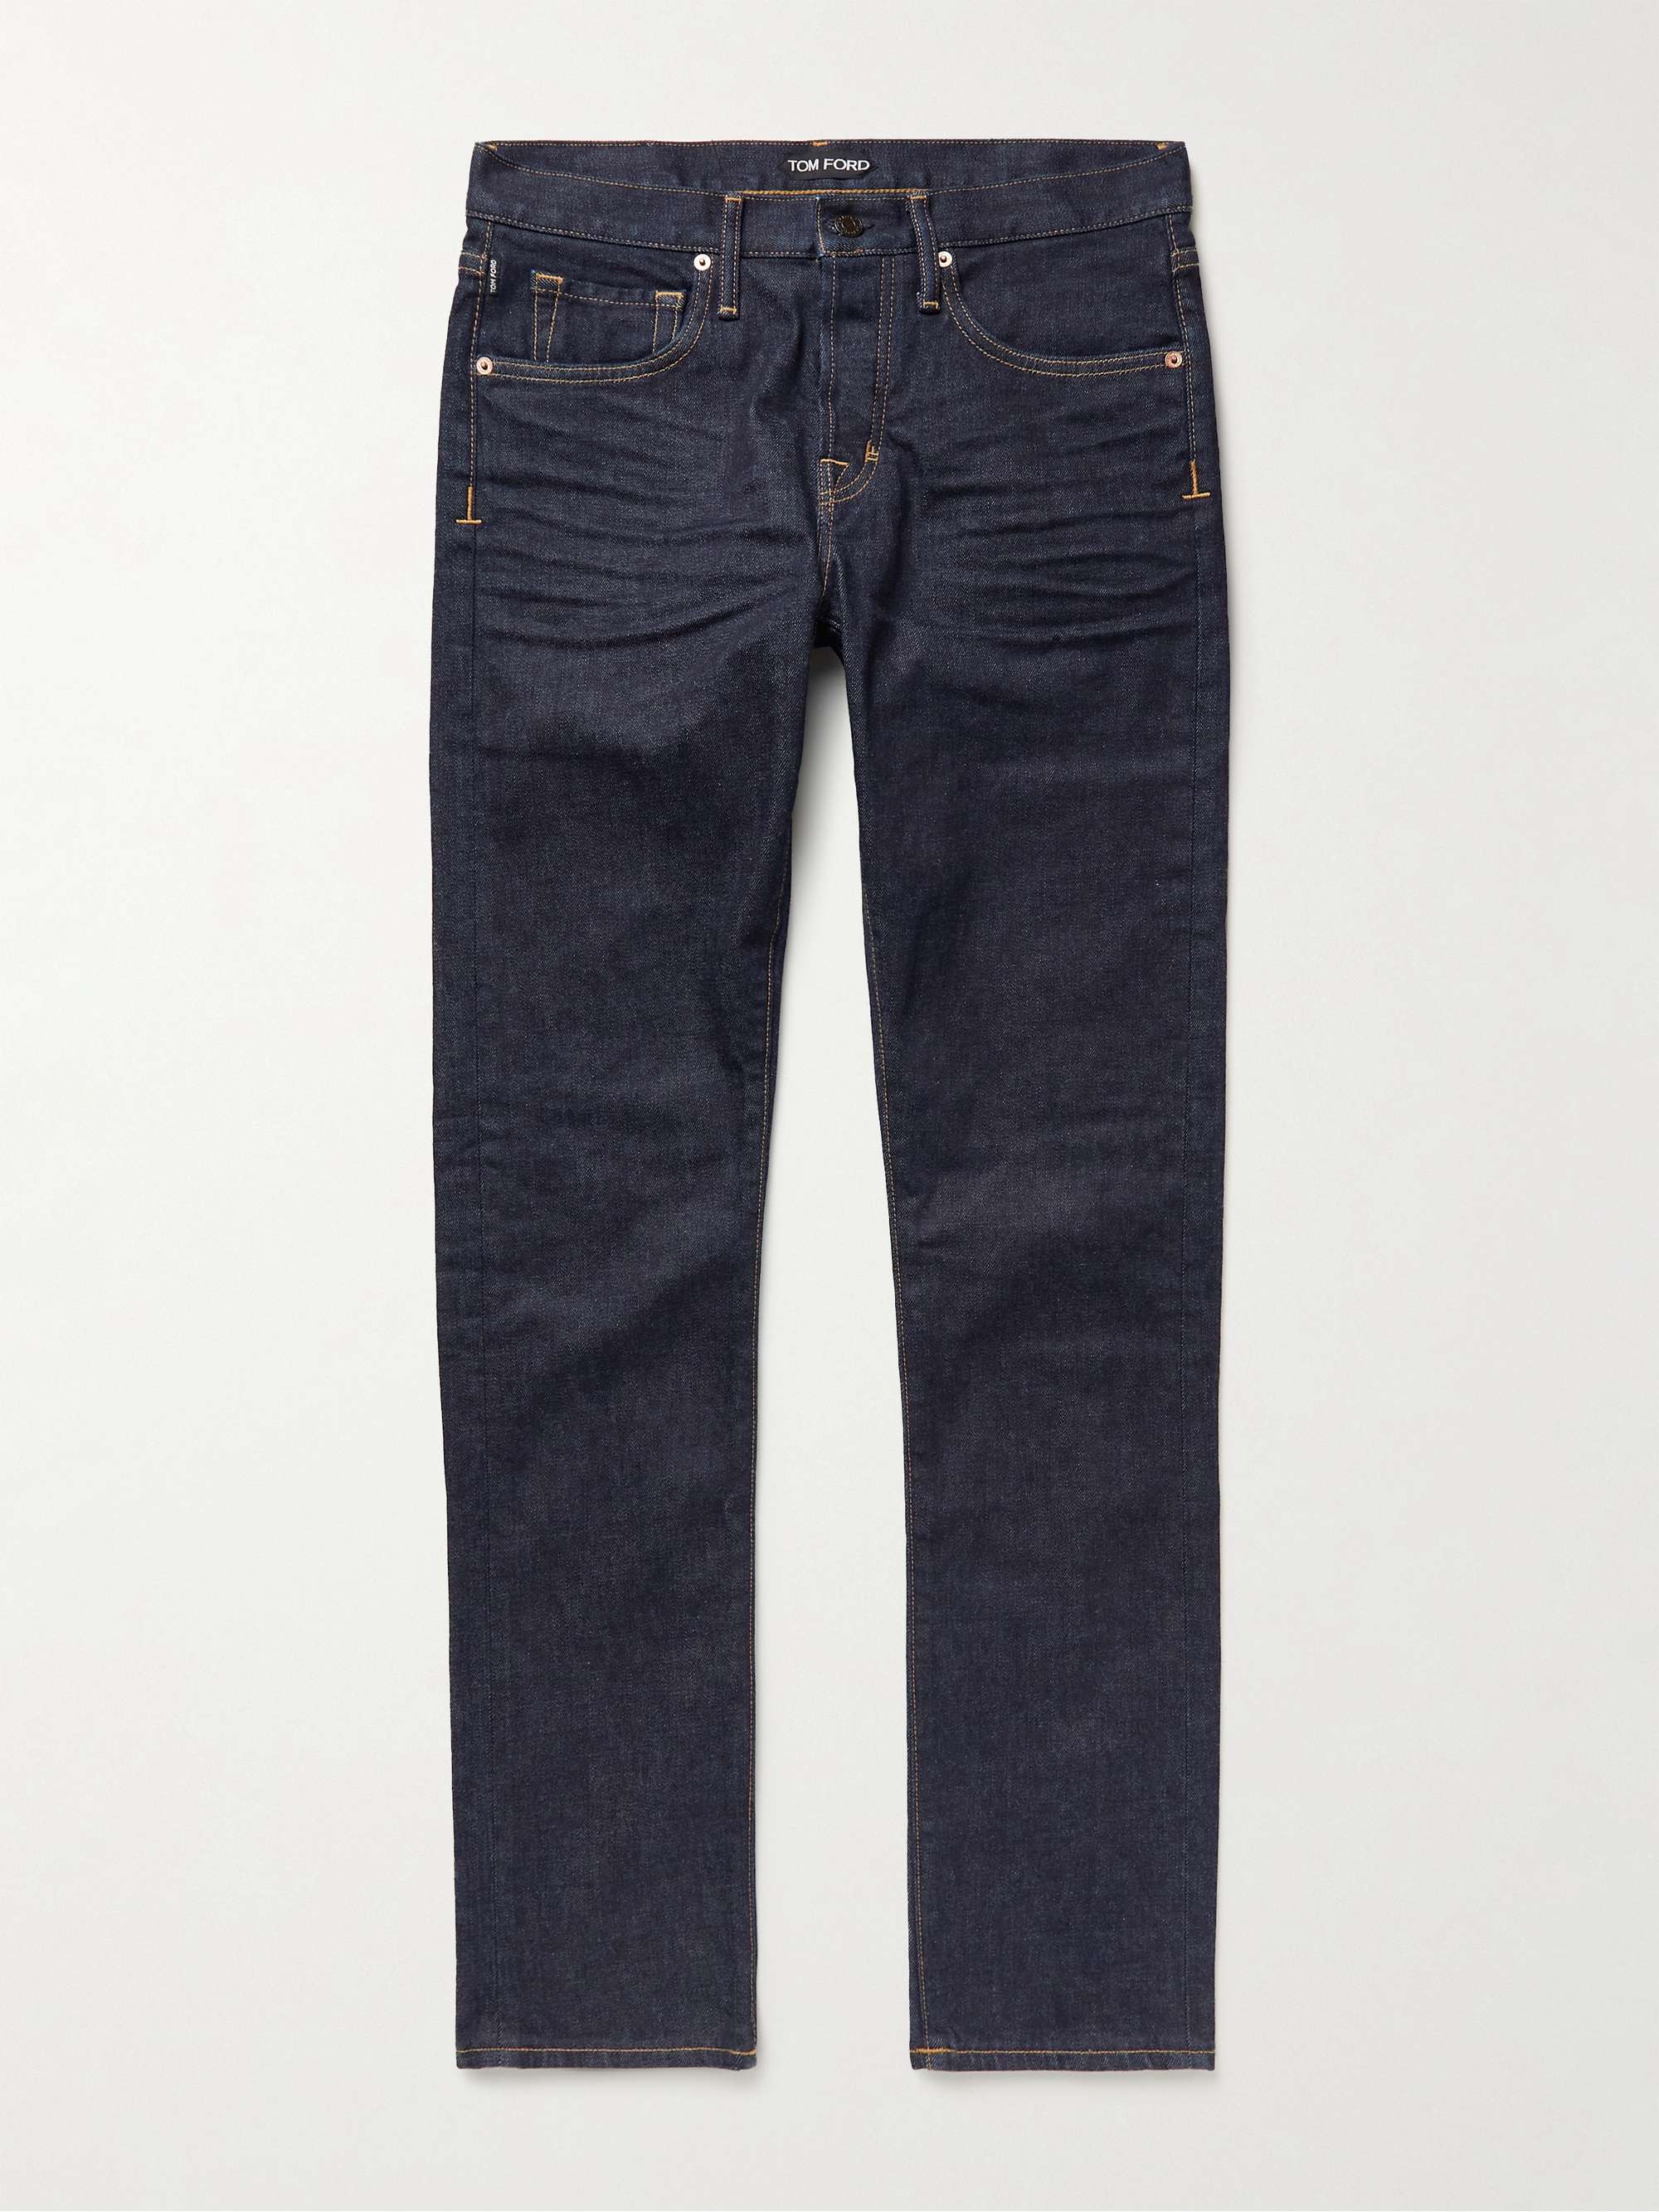 Tom Ford Denim Slim-fit Selvedge Jeans in Black for Men Mens Clothing Jeans Straight-leg jeans 